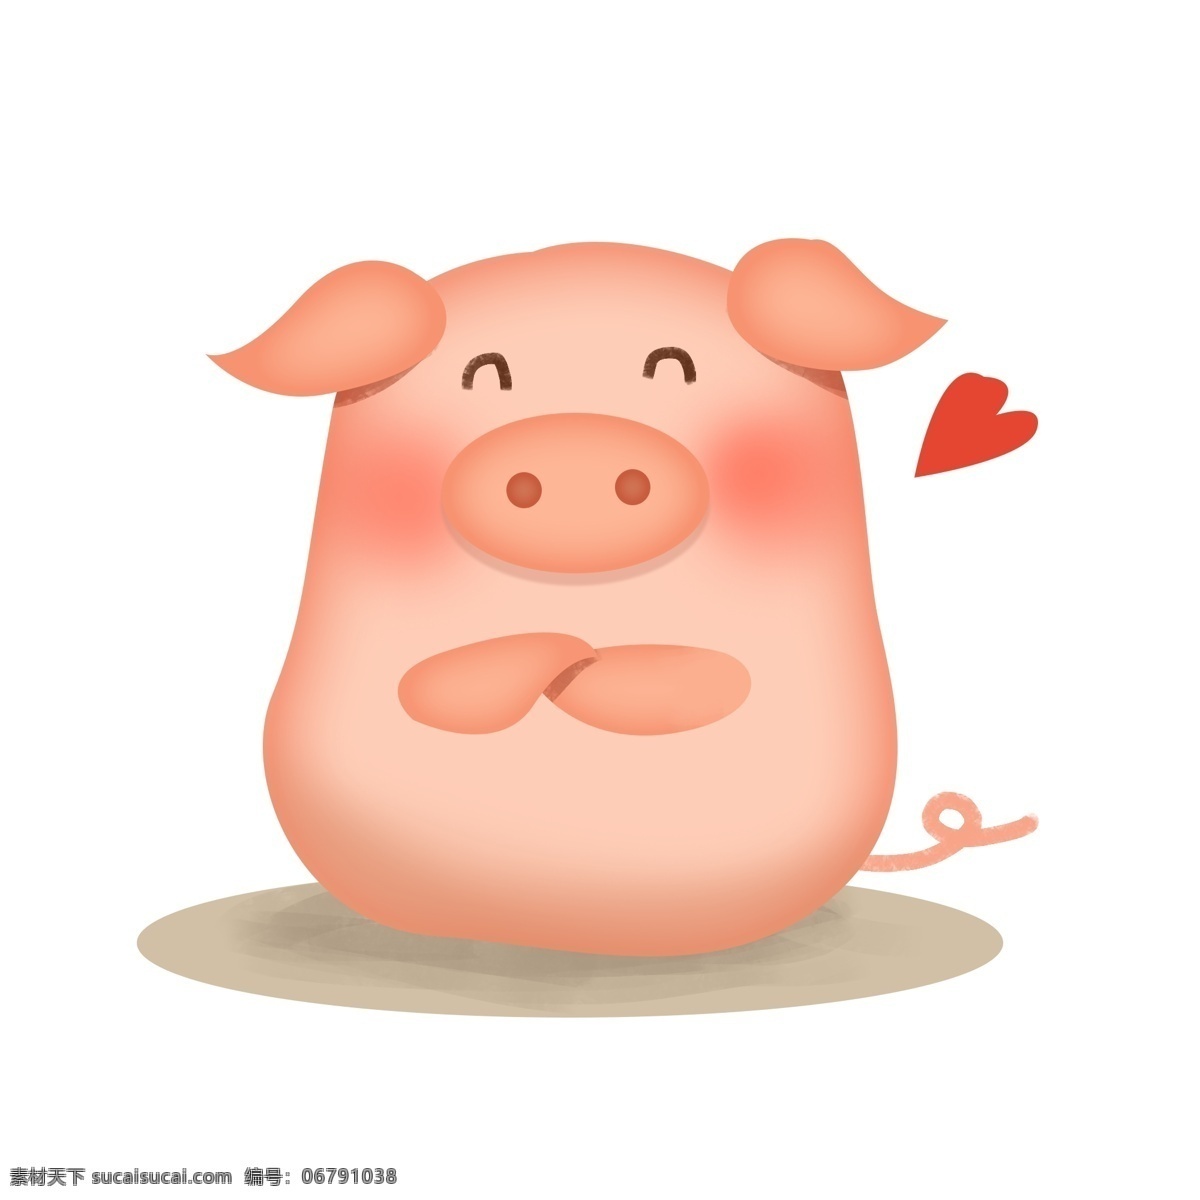 手绘 猪年 可爱 小 猪 插画 红色心形 粉红色猪猪 可爱猪仔 爱心猪 卡通猪 粉红猪 红色爱心 手绘小猪插画 爱心小猪插画